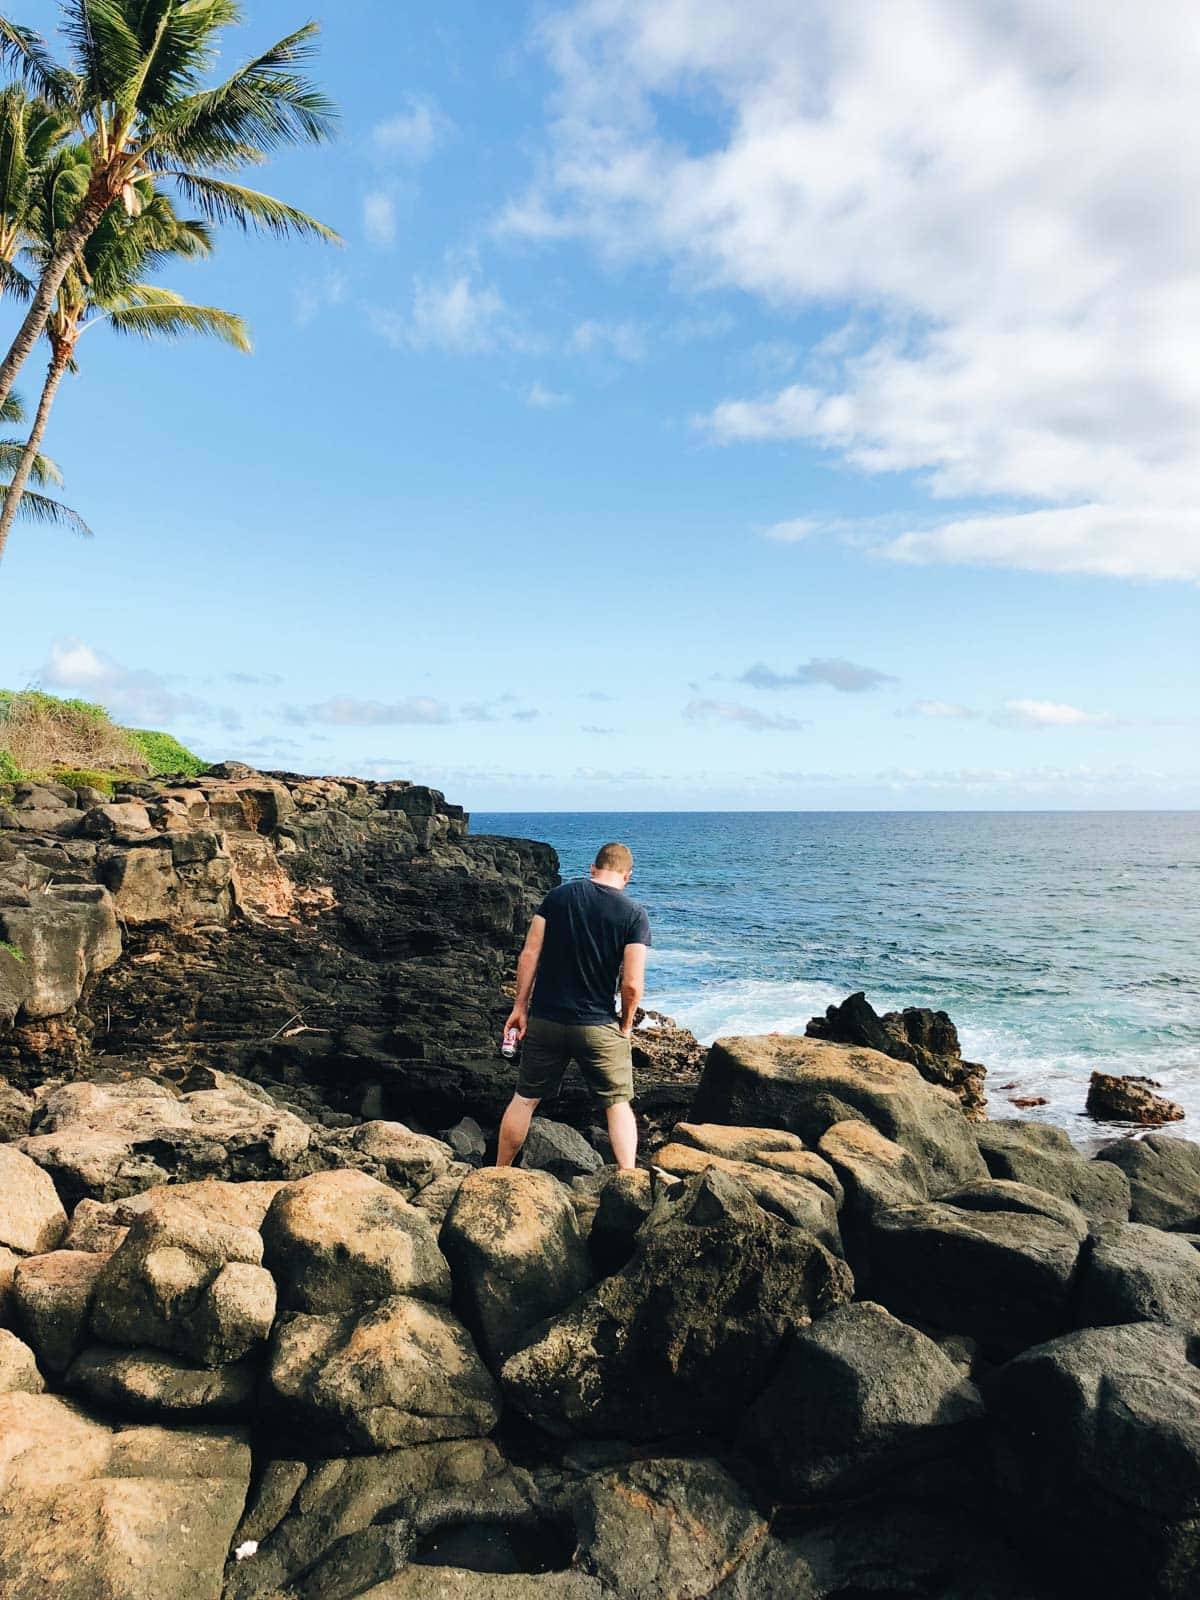 Man walking on rocks near the ocean.